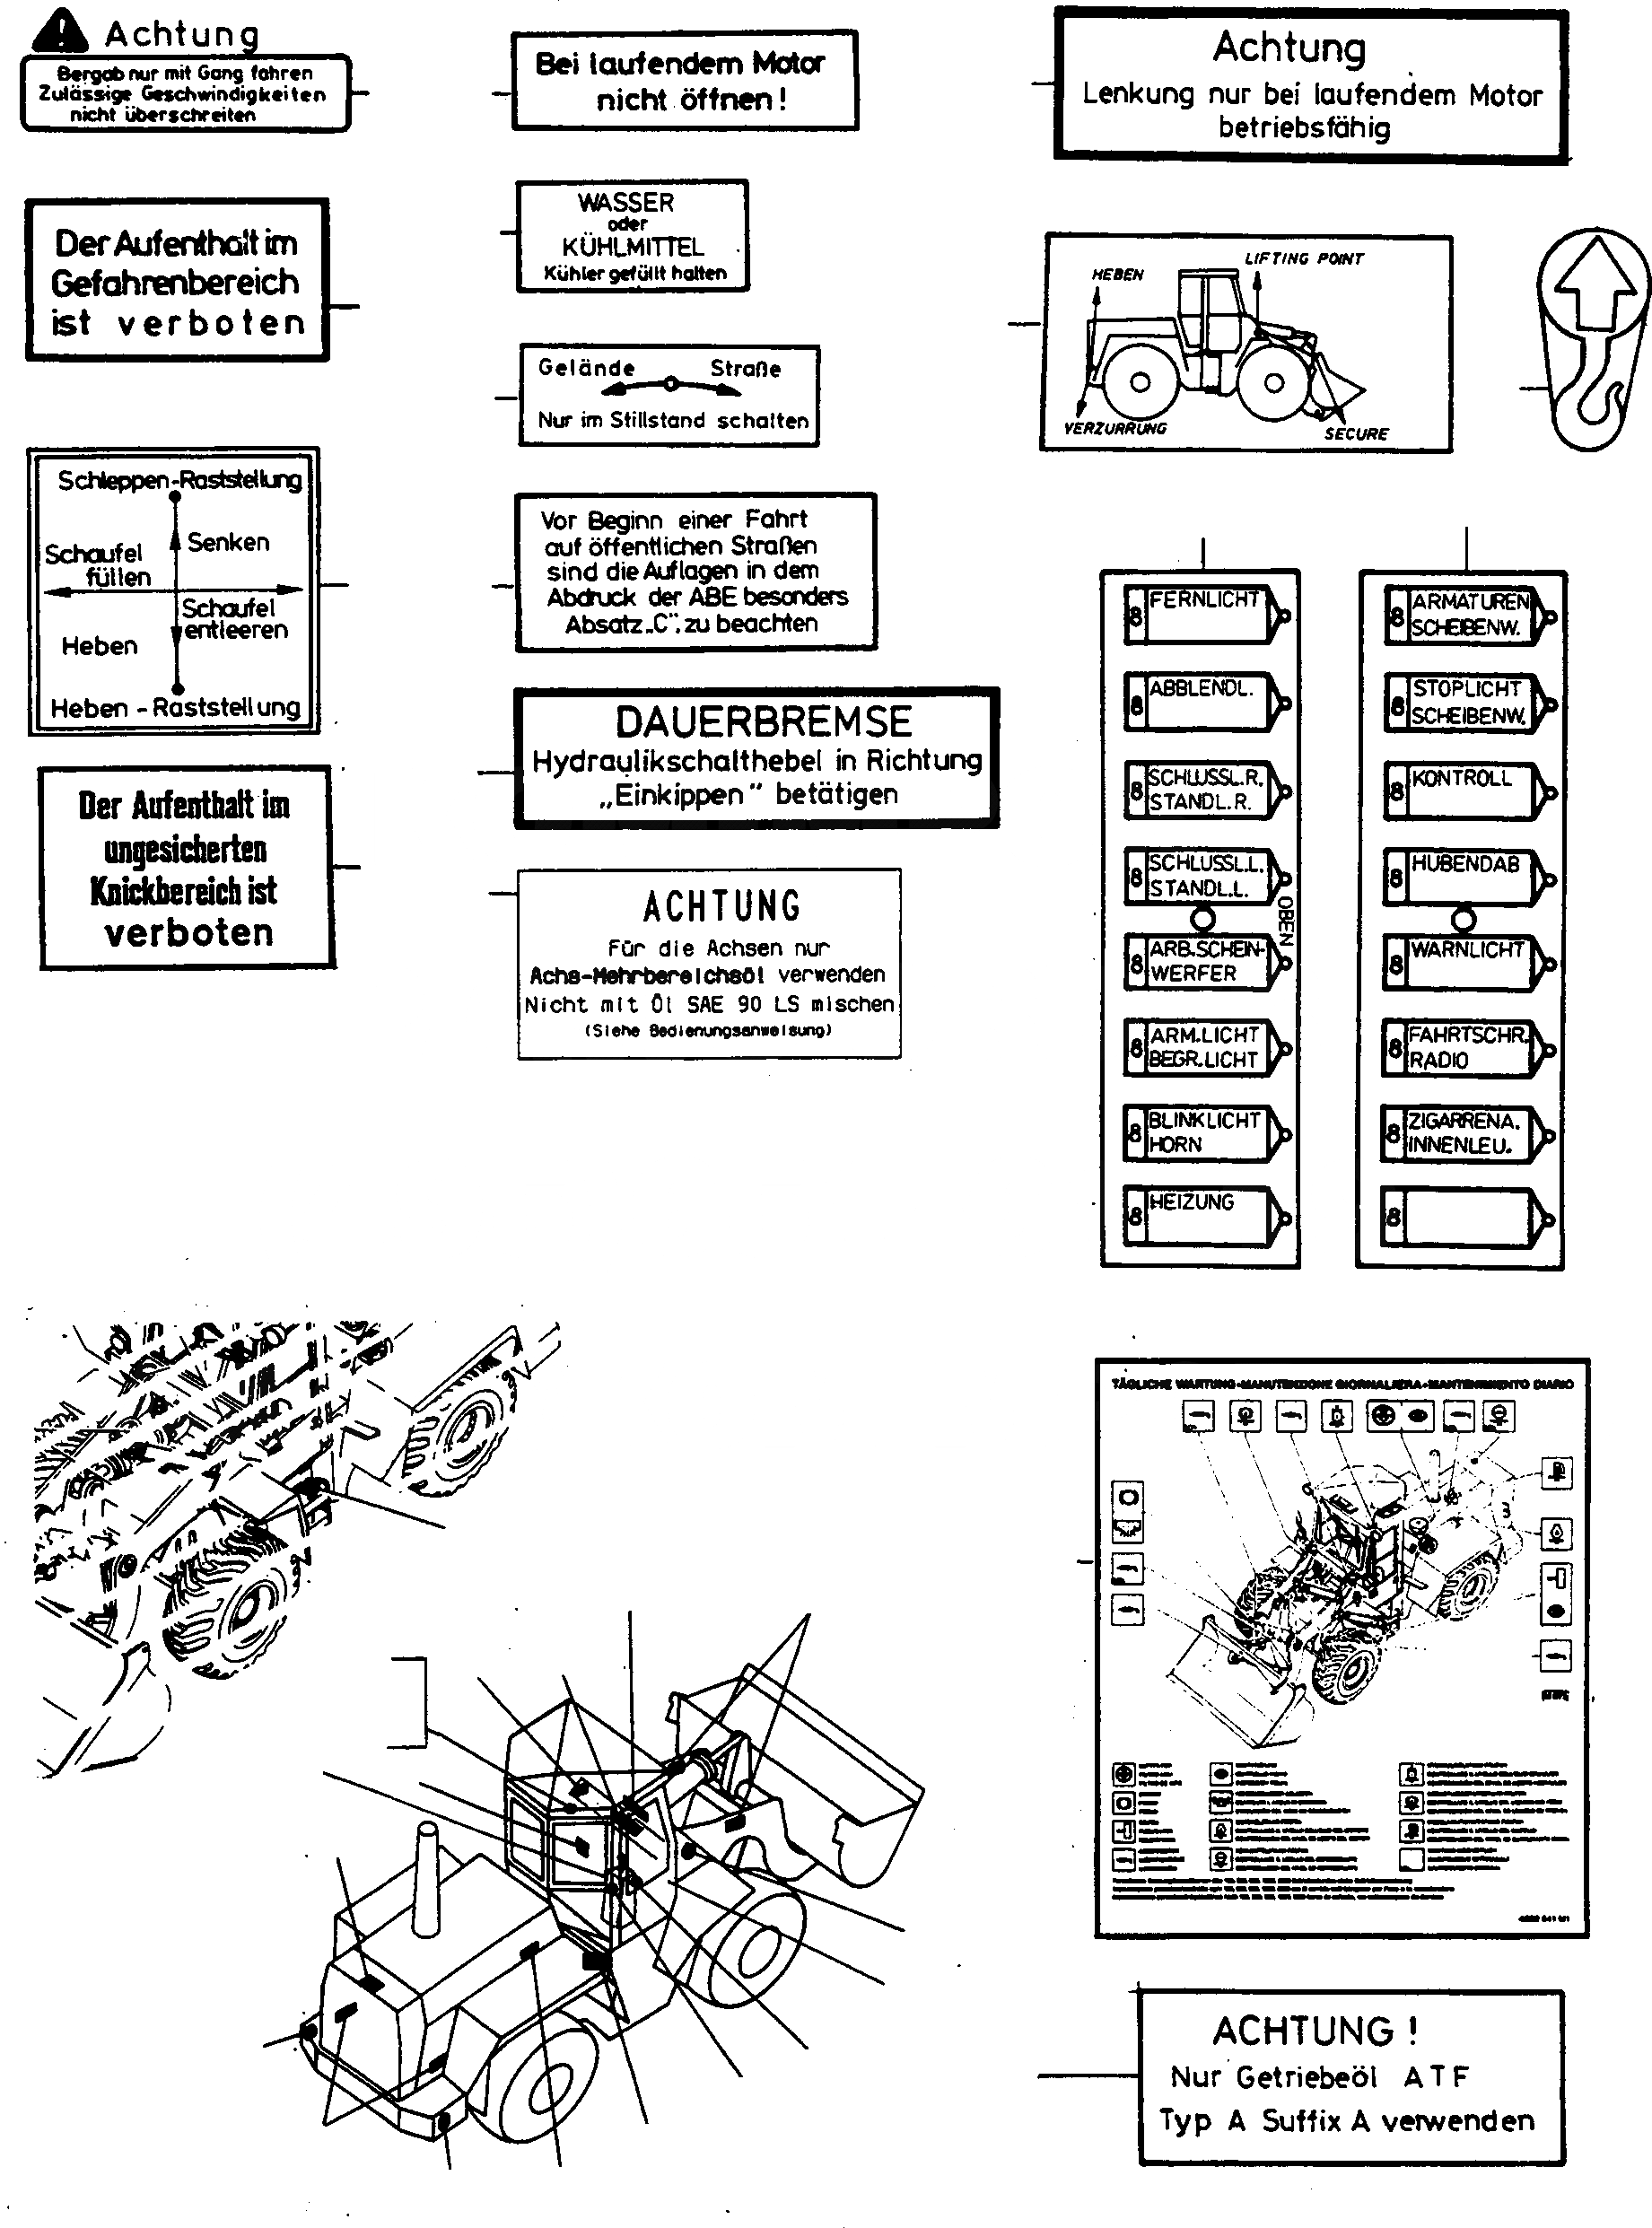 Схема запчастей Komatsu 55C - ТАБЛИЧКИS, ПОРТУГАЛ. ШАССИ И SUPERSTRUCTURE